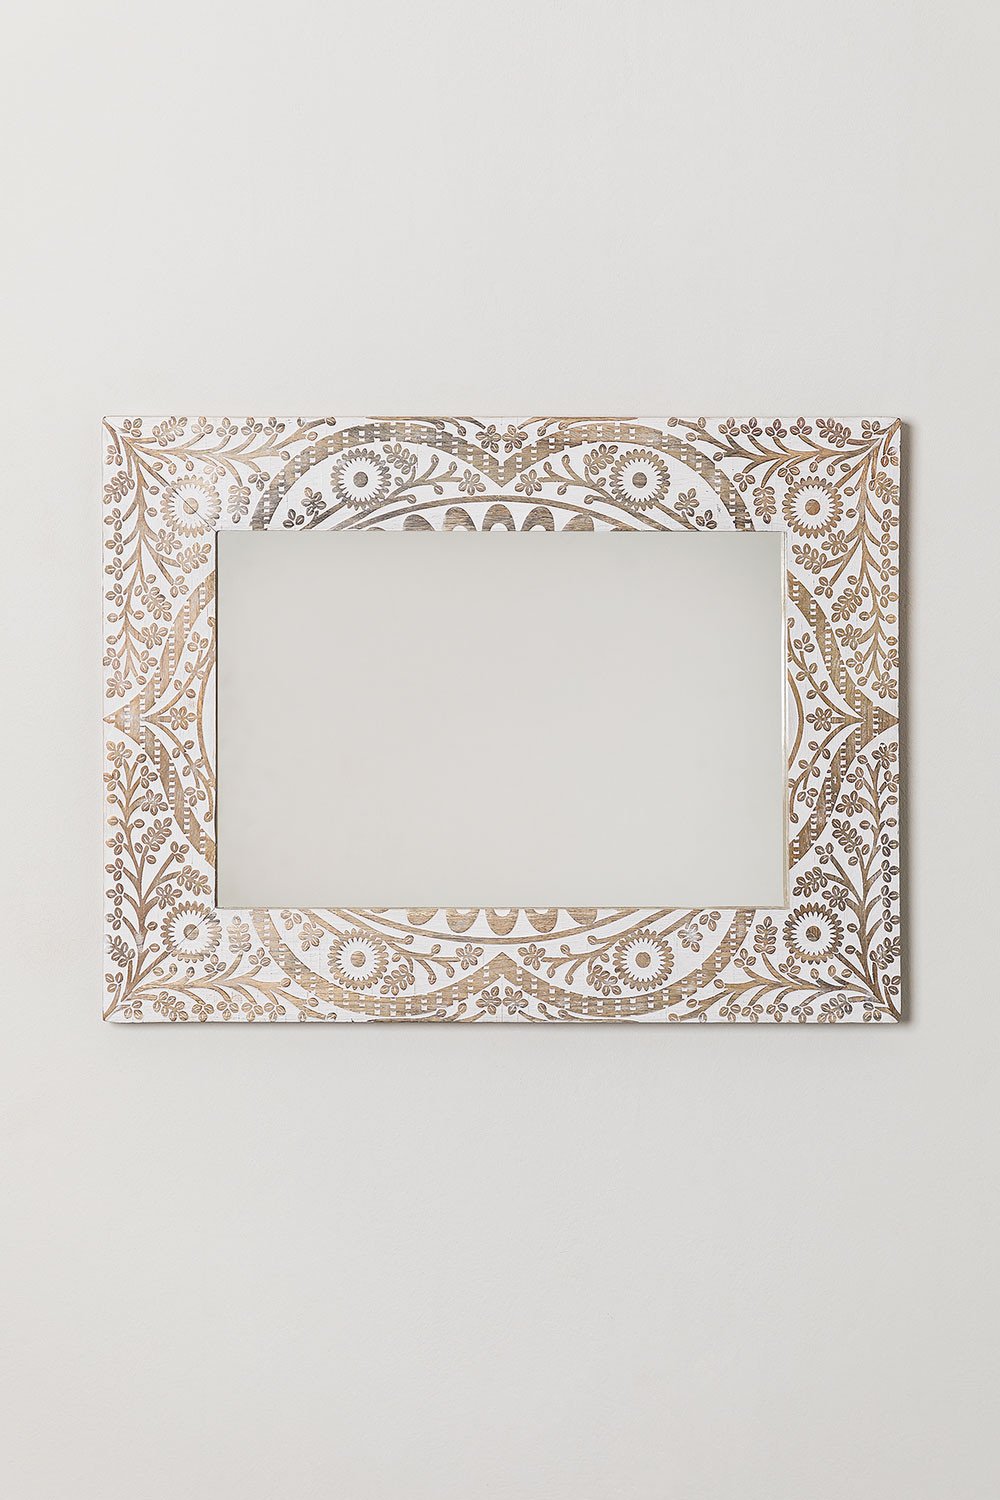 Specchio da Parete Rettangolare in Legno di Mango Zargor - SKLUM